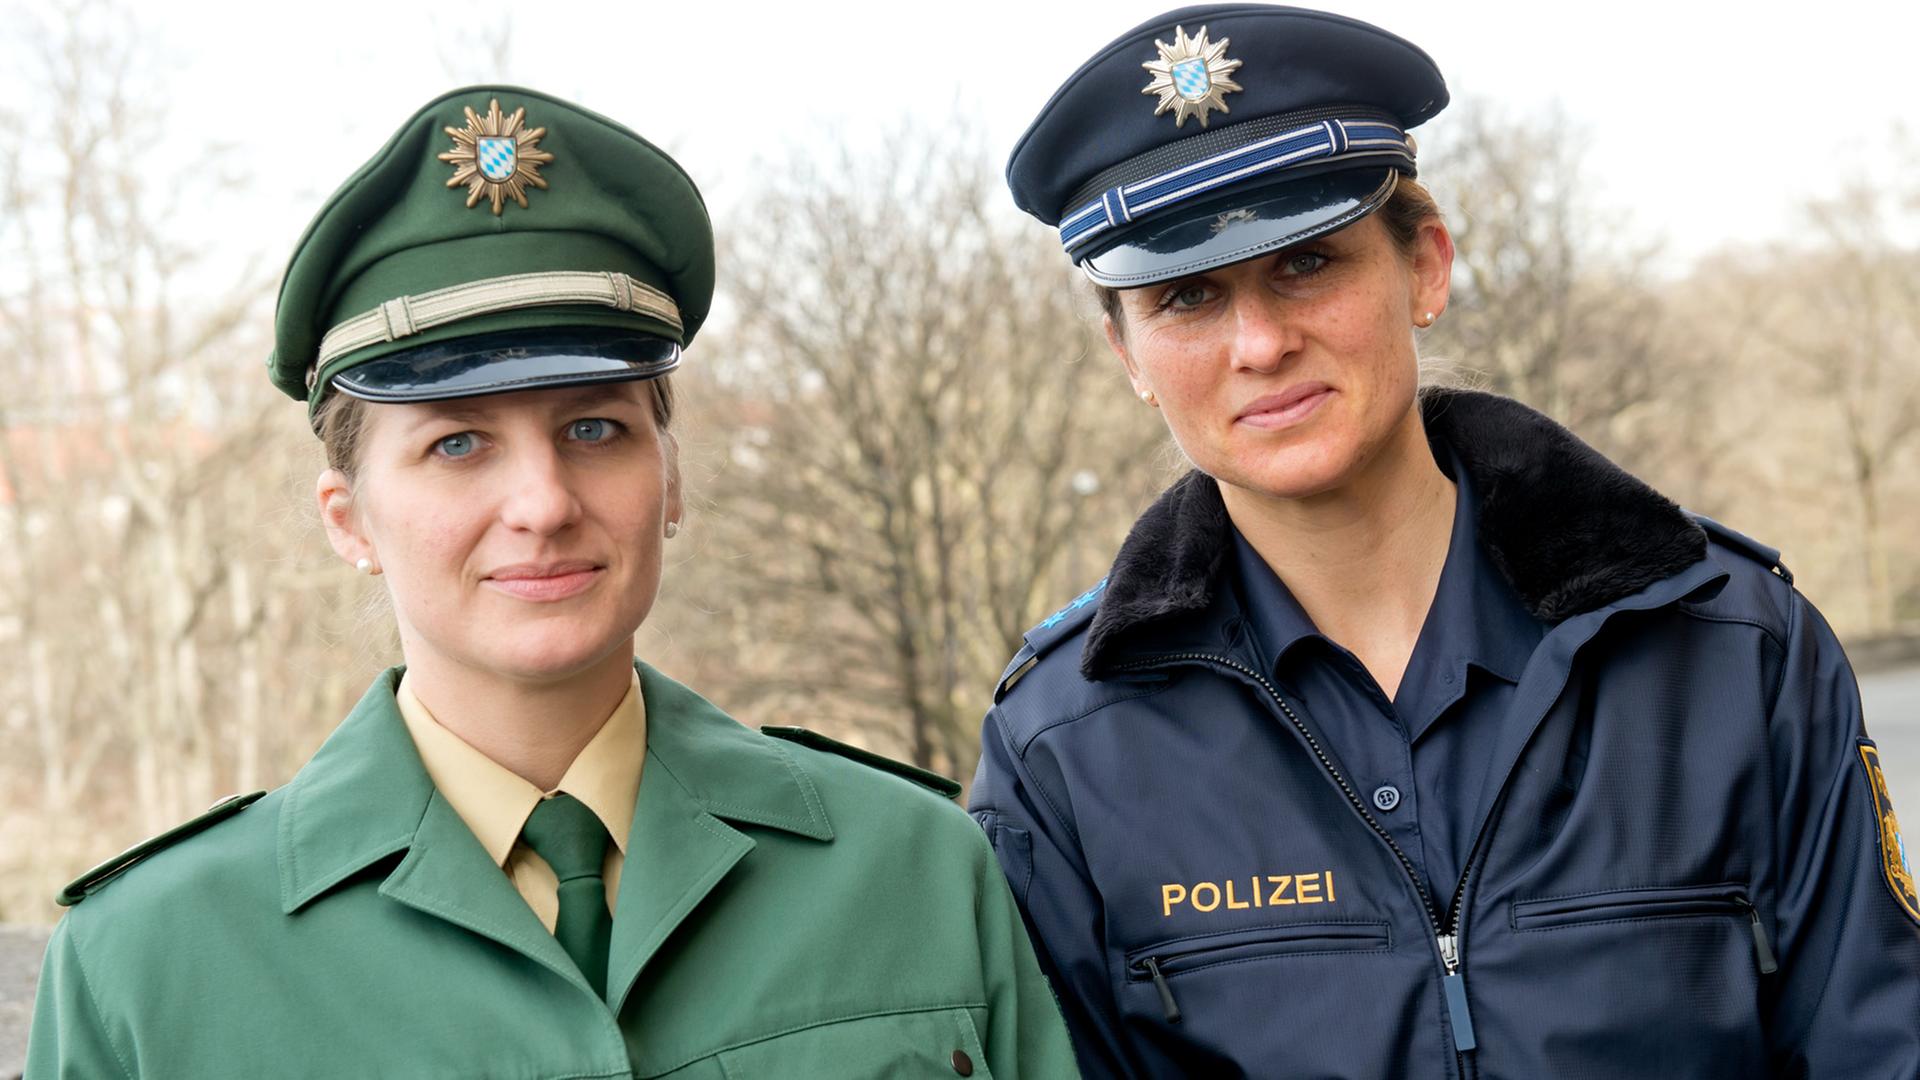 Zwei Polizistinnen mit der alten (links) und neuen Uniform der bayerischen Polizei.